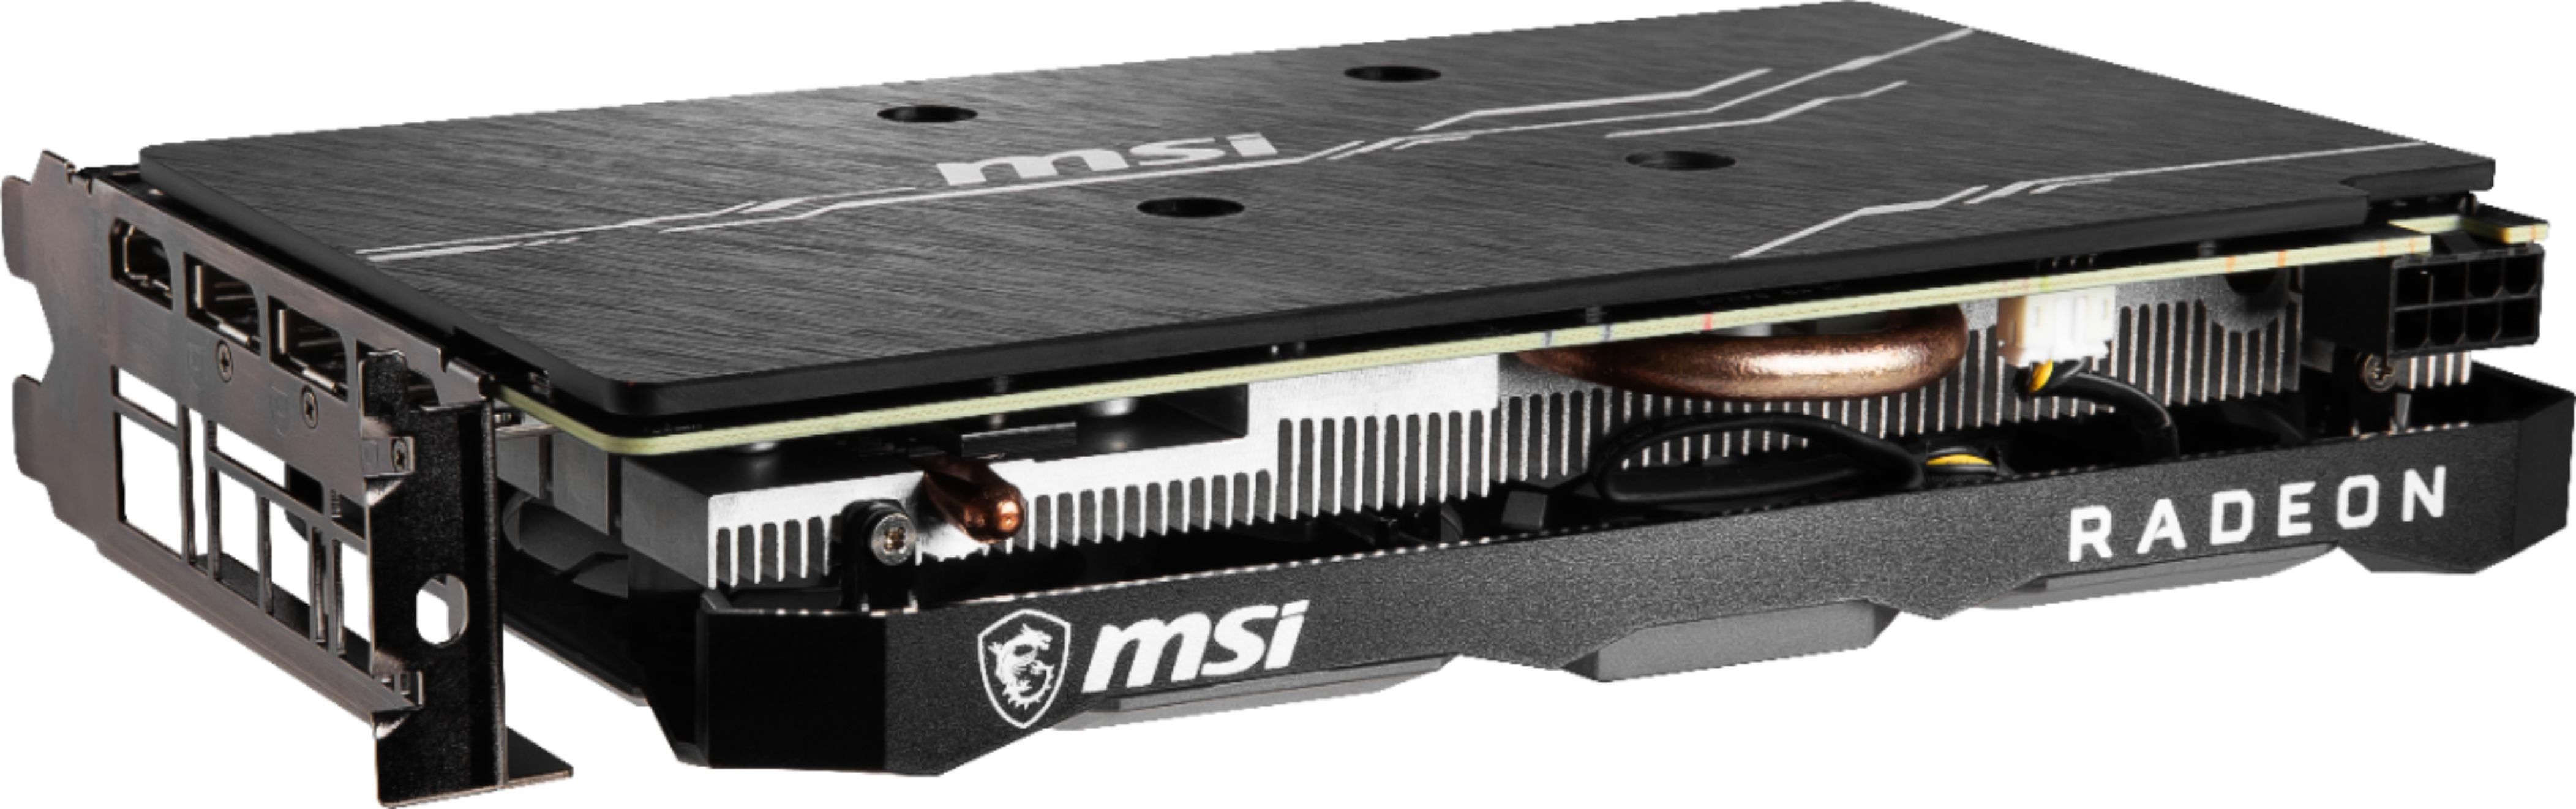 Best Buy: MSI AMD Radeon RX 5500 XT 8GB GDDR6 PCI Express 4.0